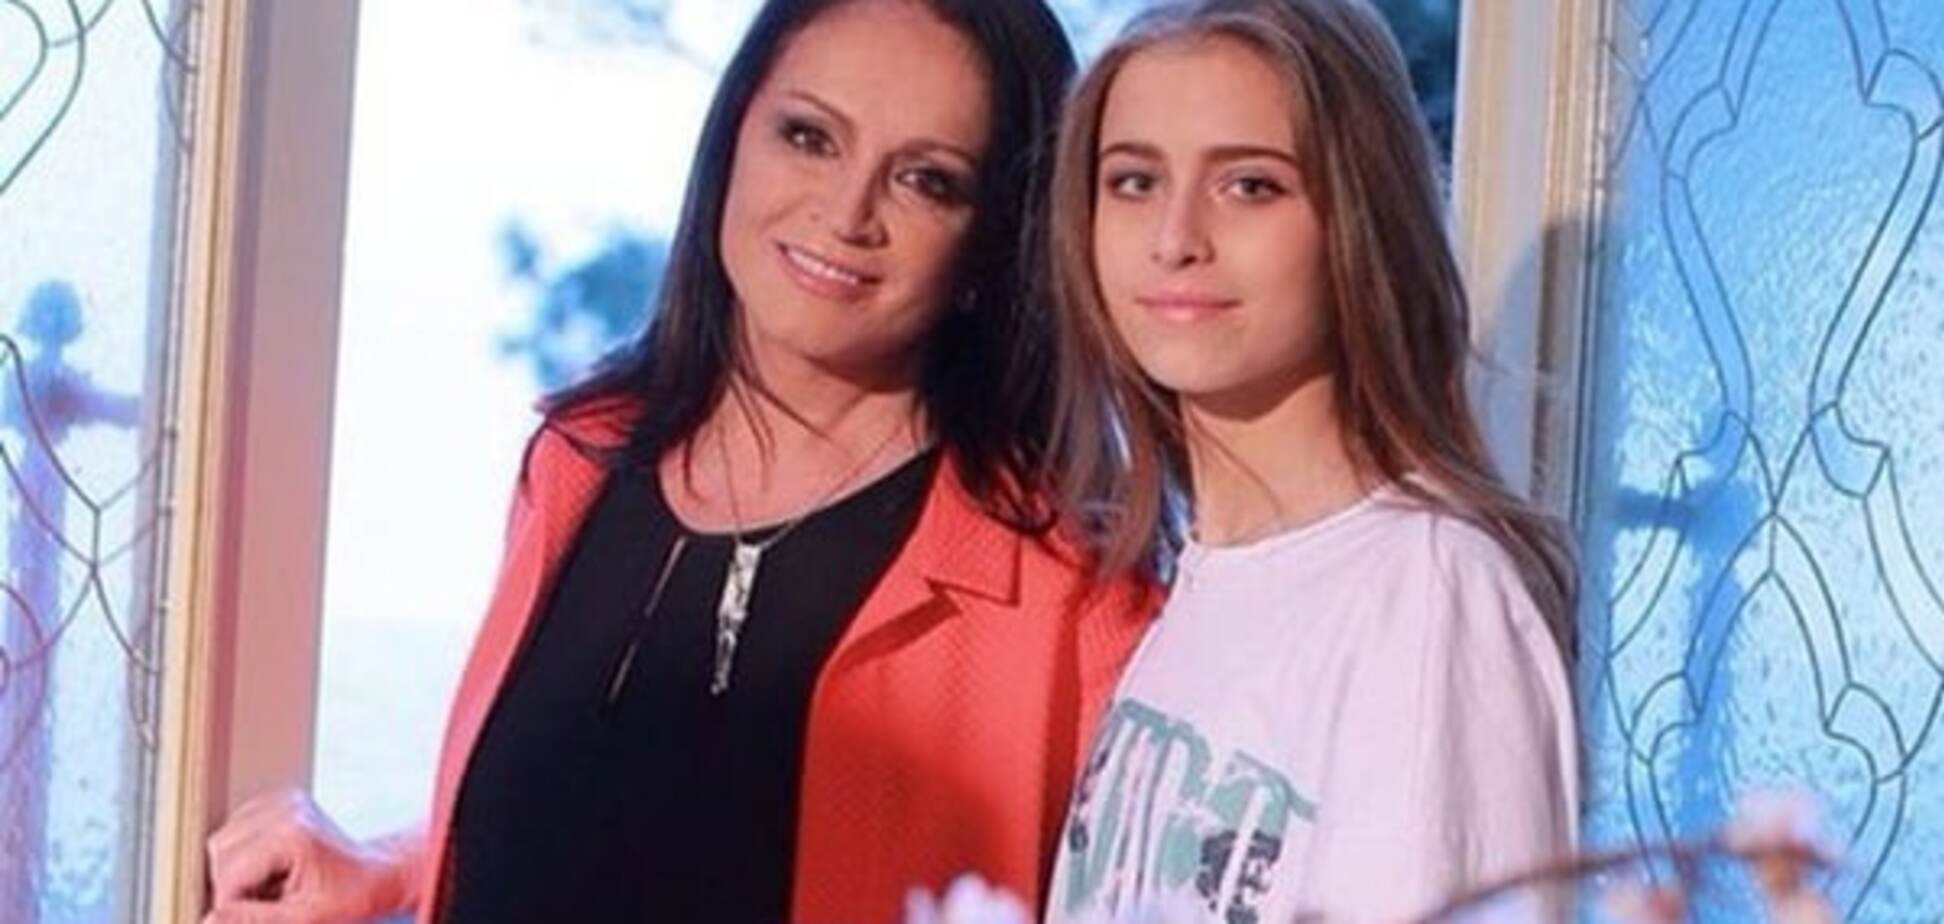 Внучка Ротару и дочка Пескова встретятся на балу дебютанток в Москве